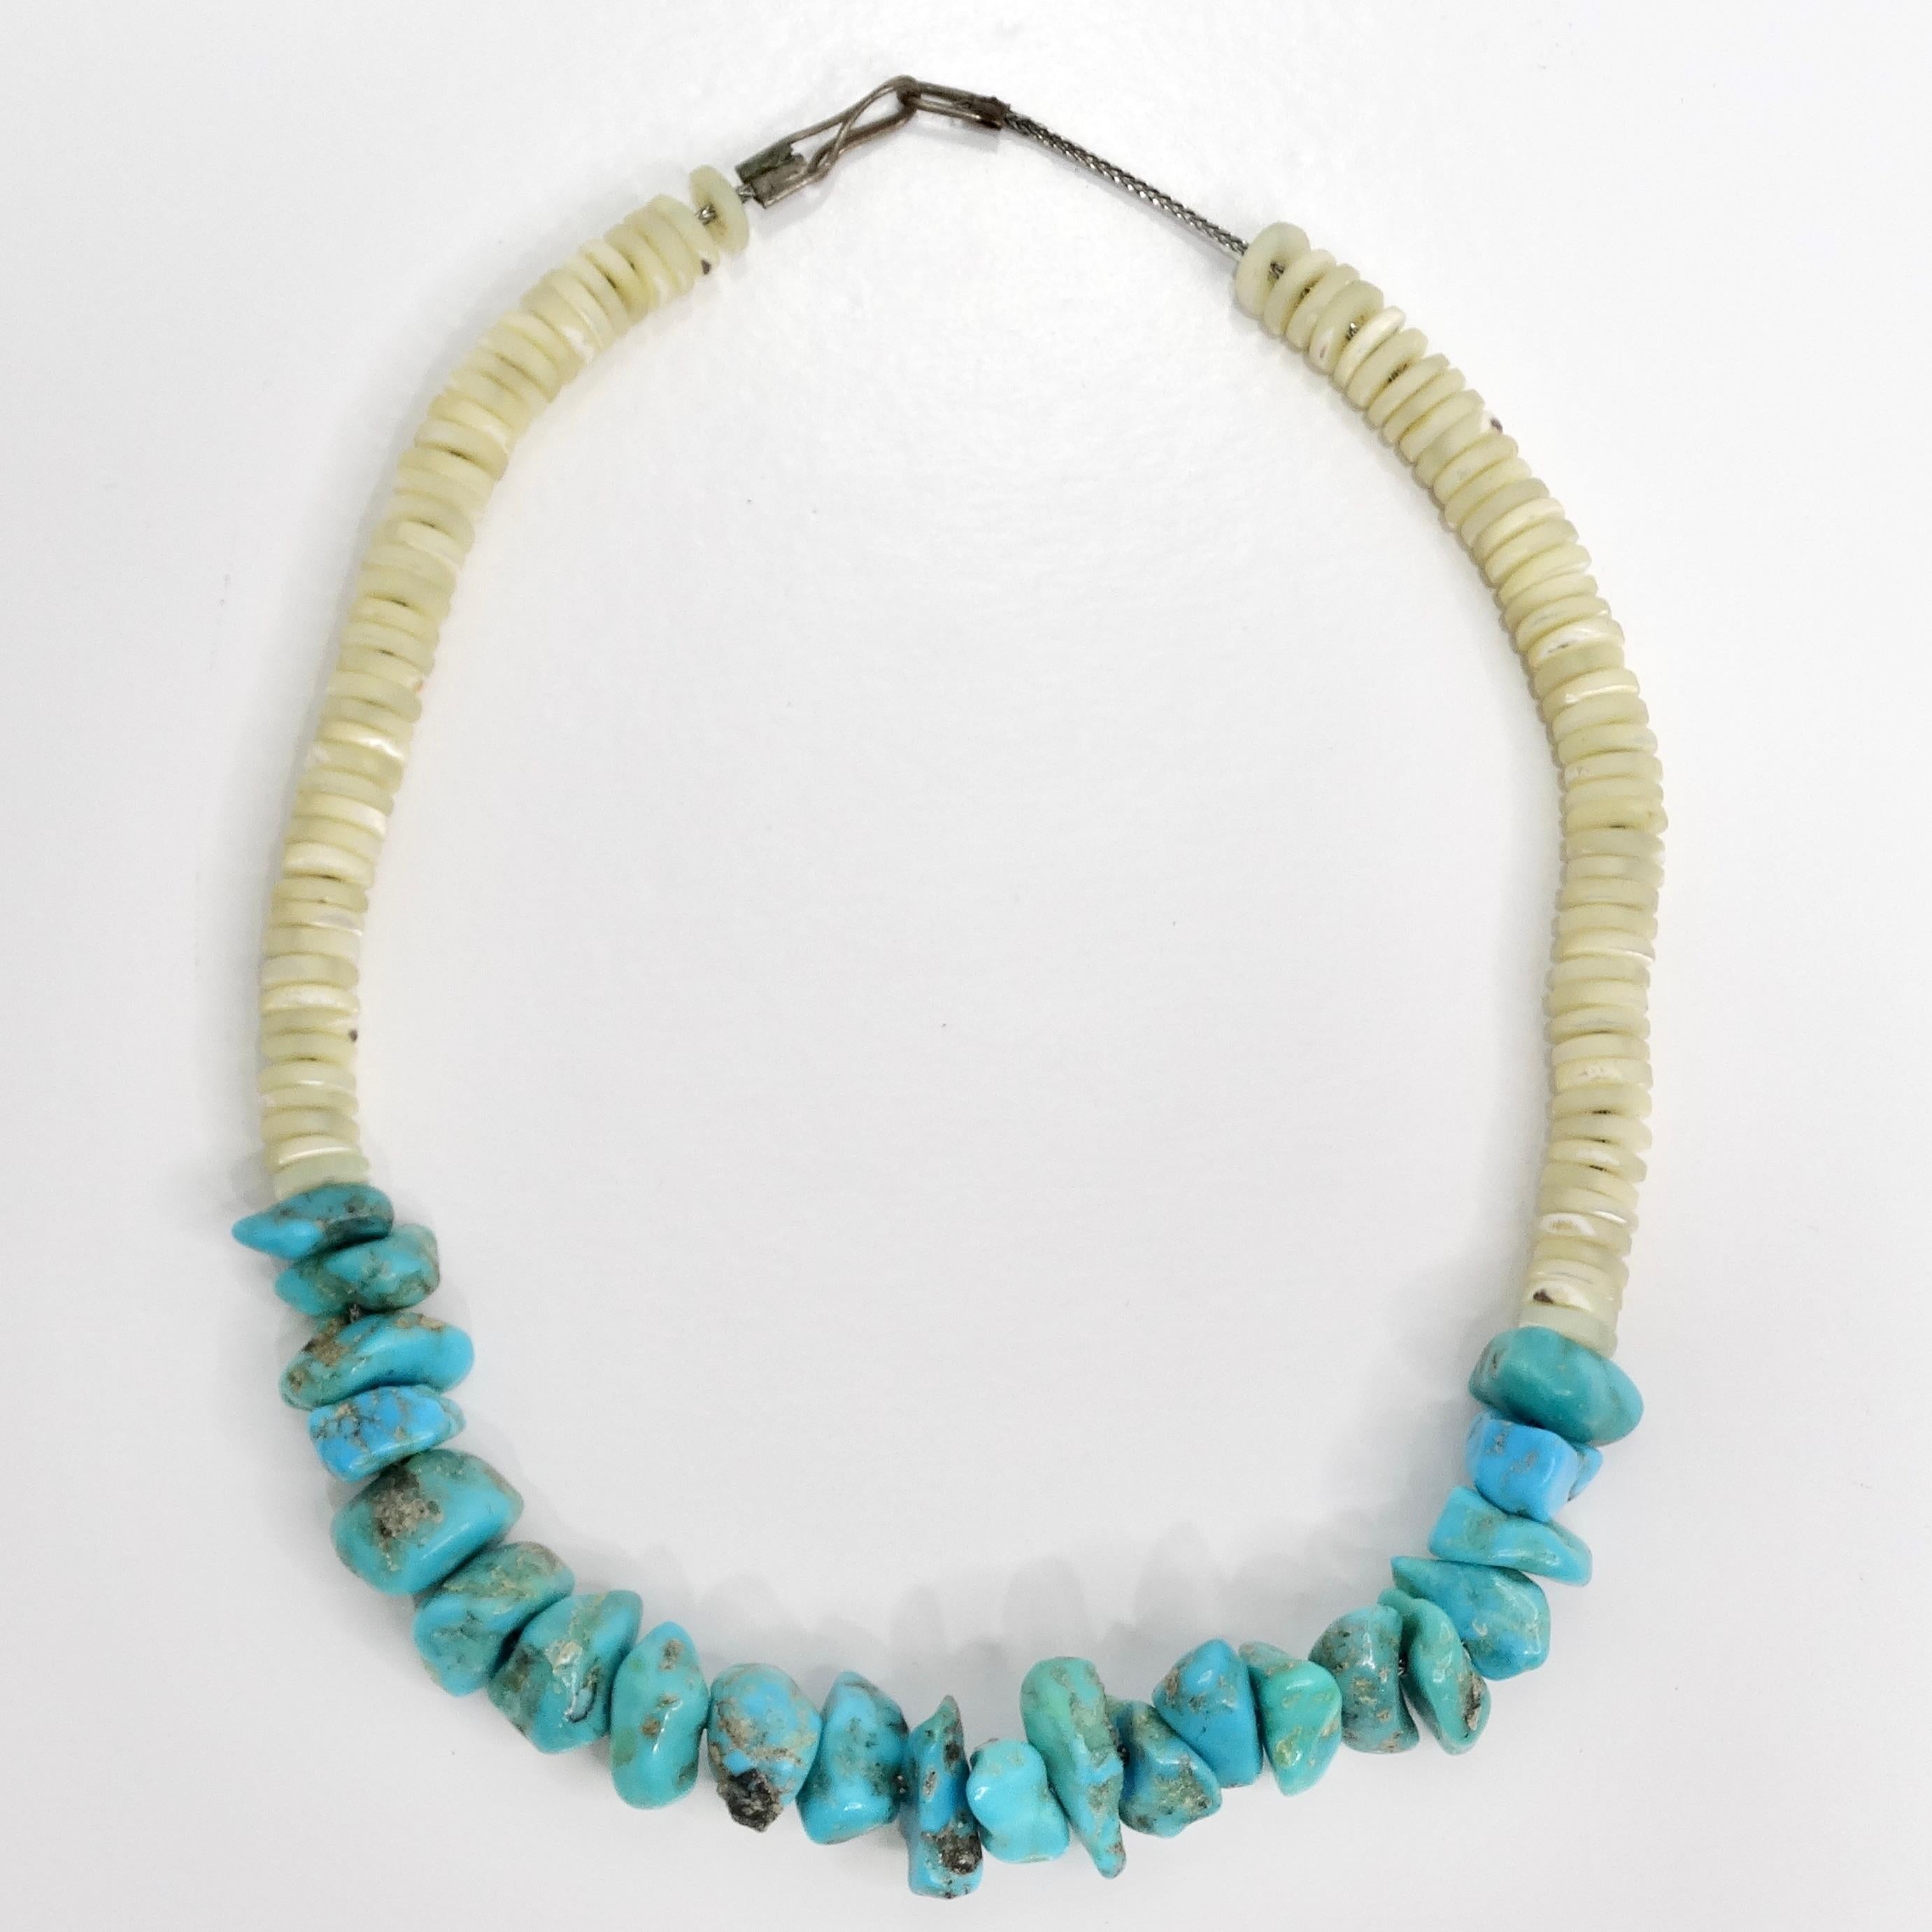 Voici le collier de perles de turquoise et de coquillages Navajo des années 1960, une pièce vintage intemporelle qui reflète la riche tradition et le savoir-faire artisanal des bijoux Navajo. Ce magnifique tour de cou présente une combinaison